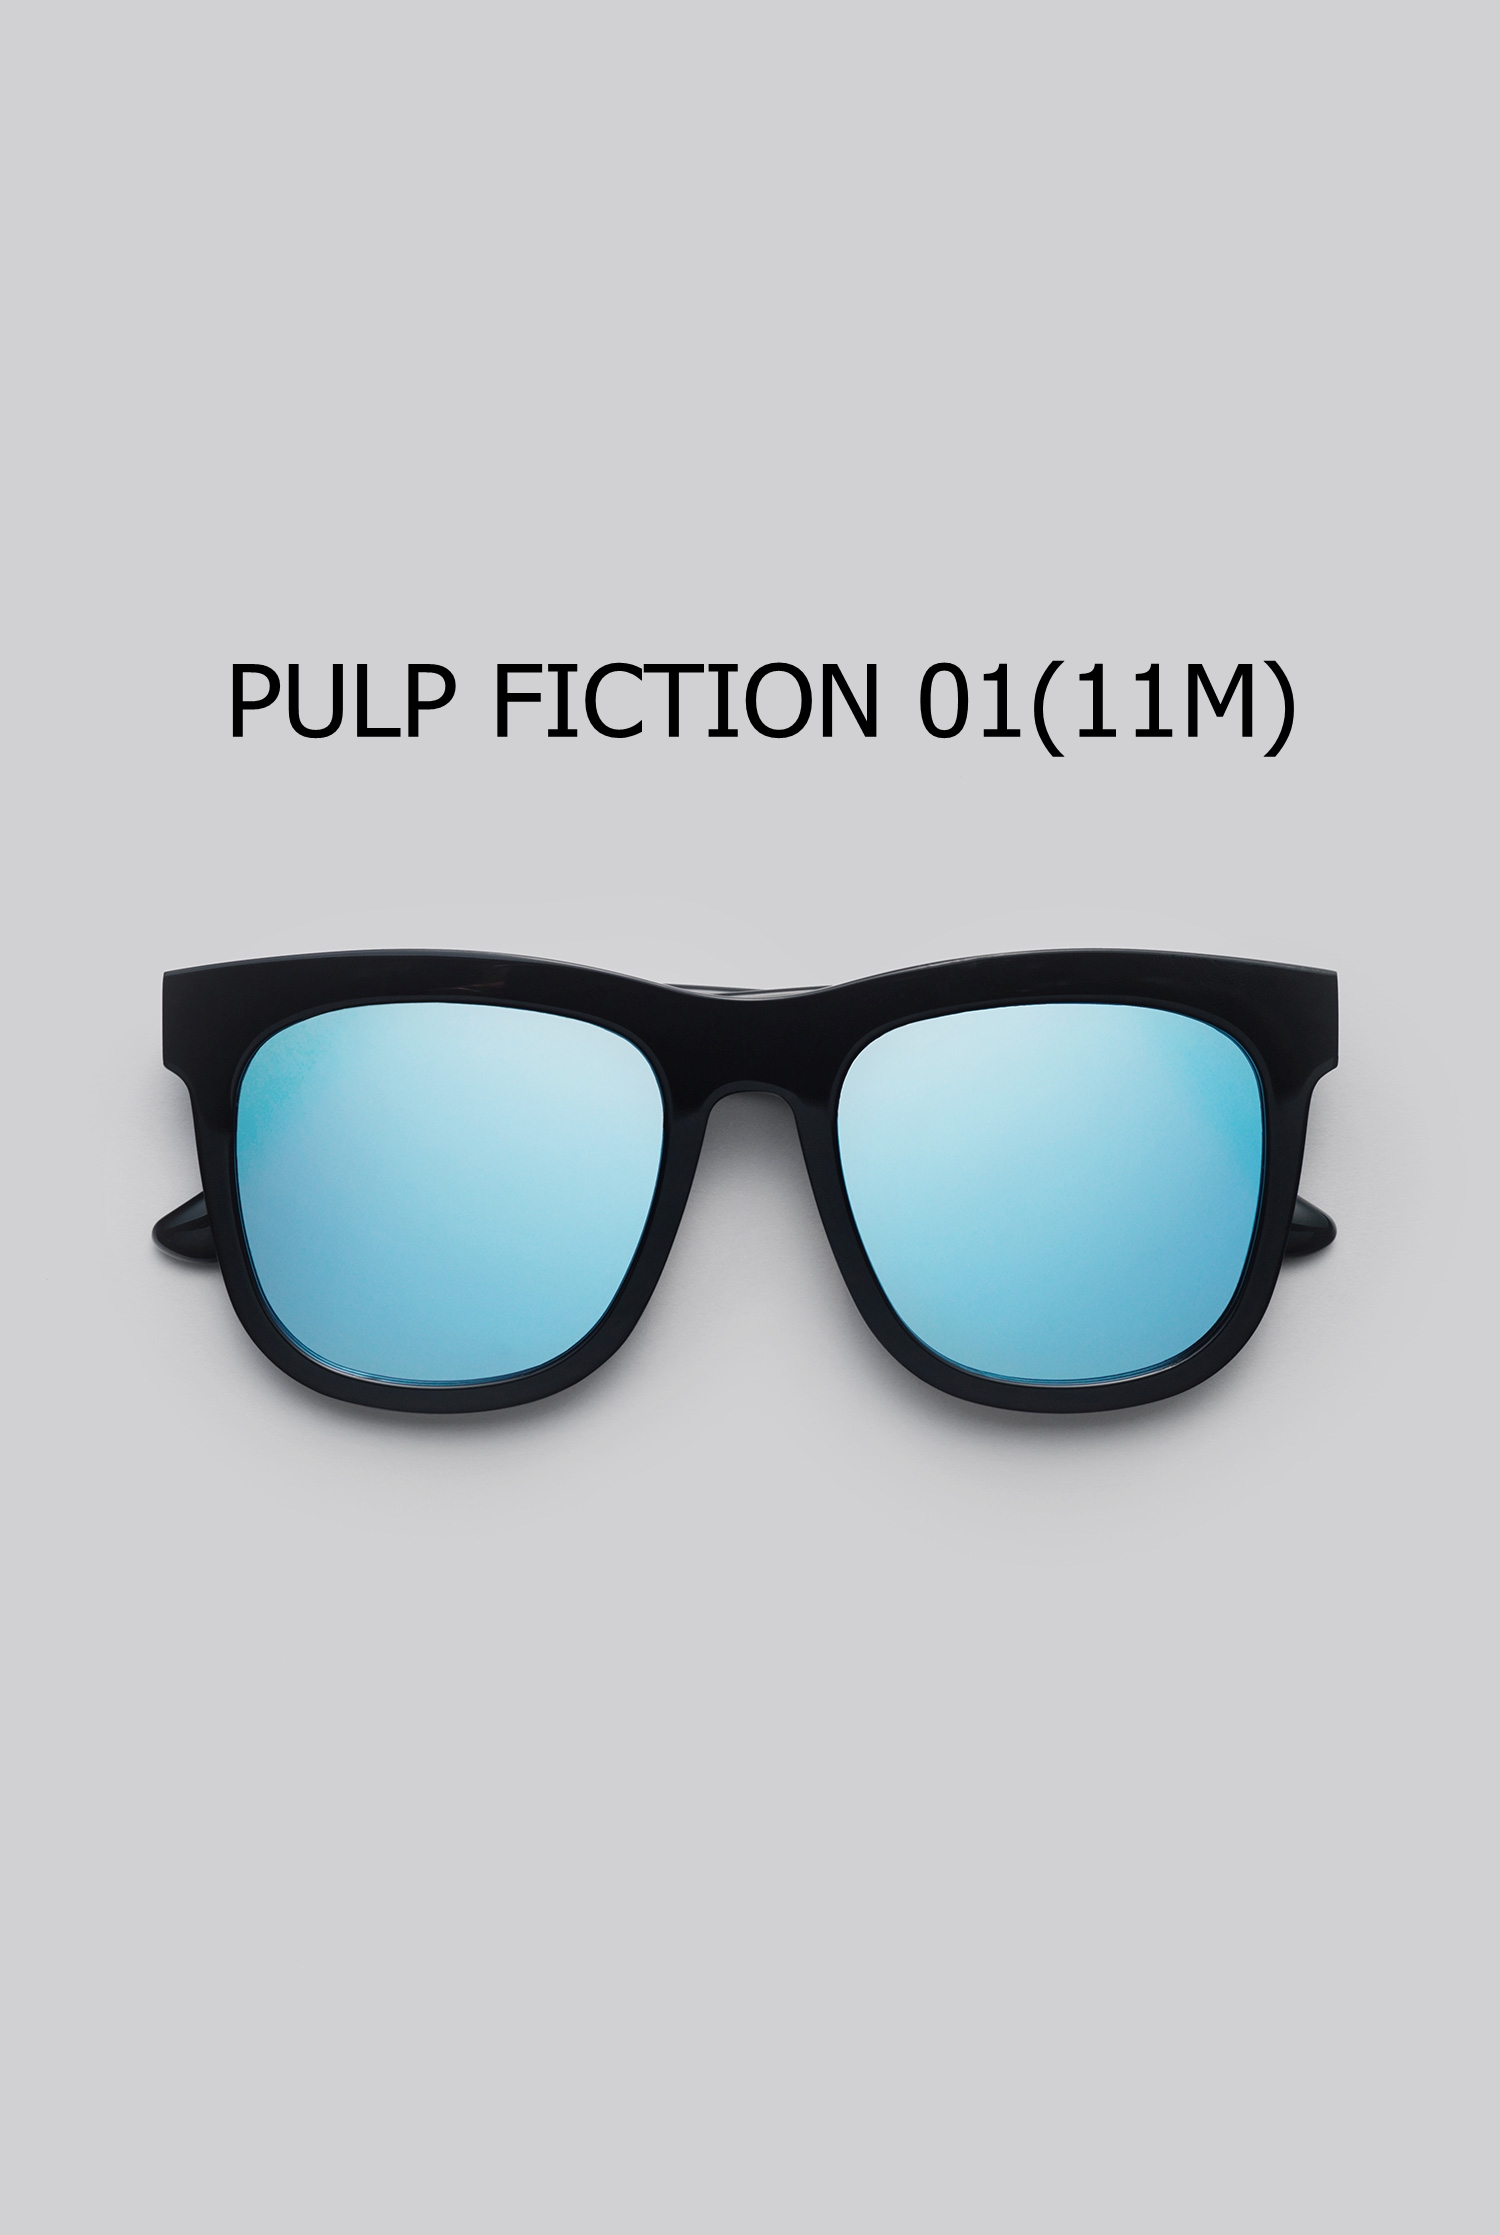 PULP FICTION 01(11M)